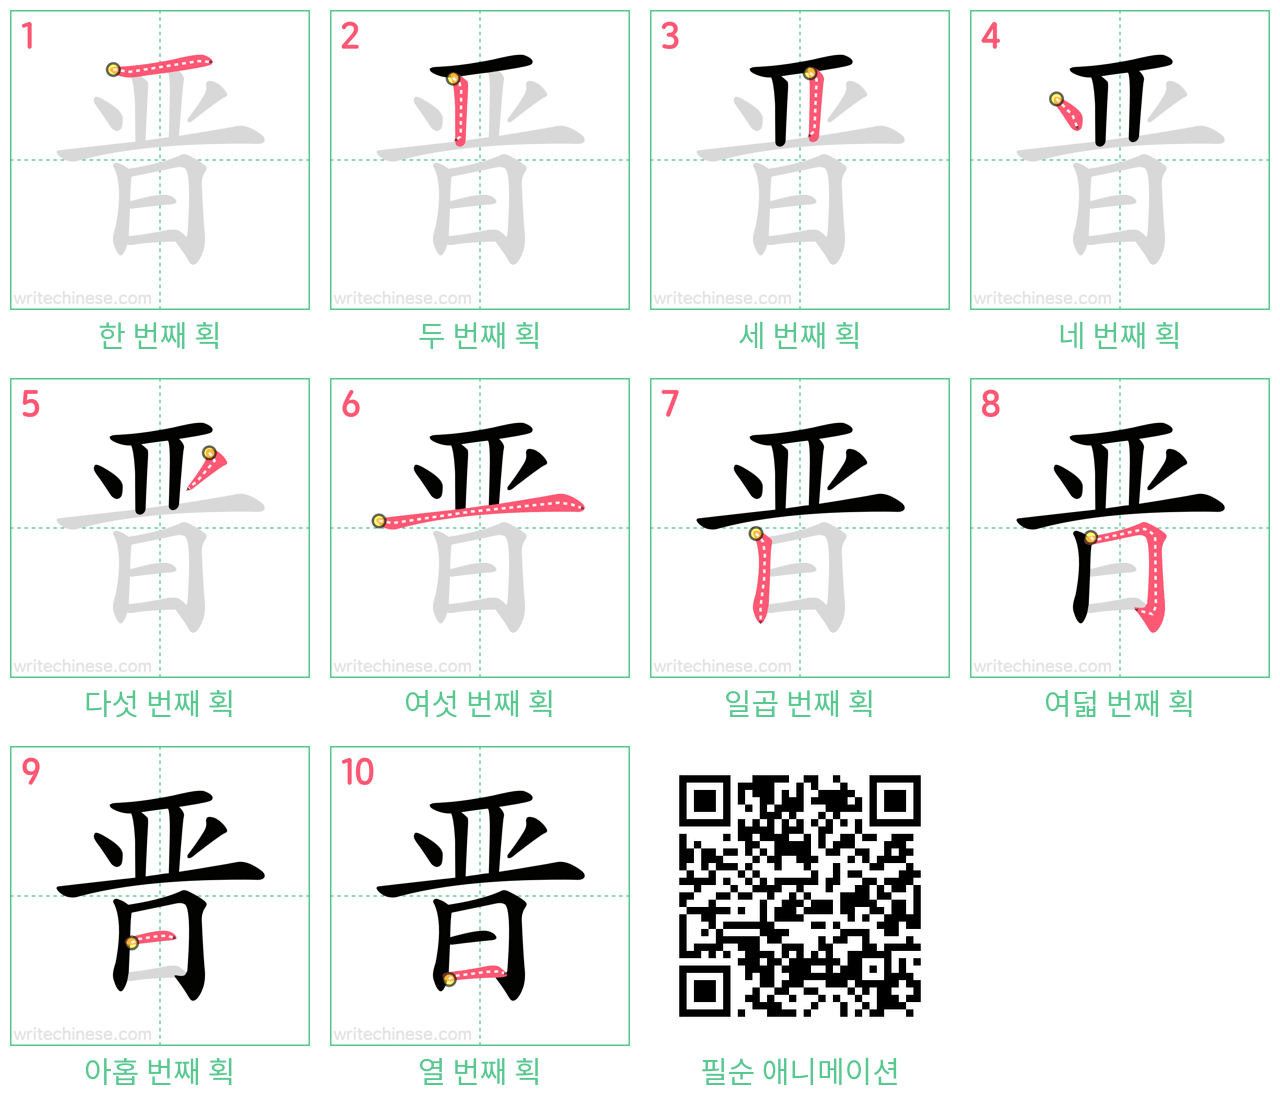 晋 step-by-step stroke order diagrams